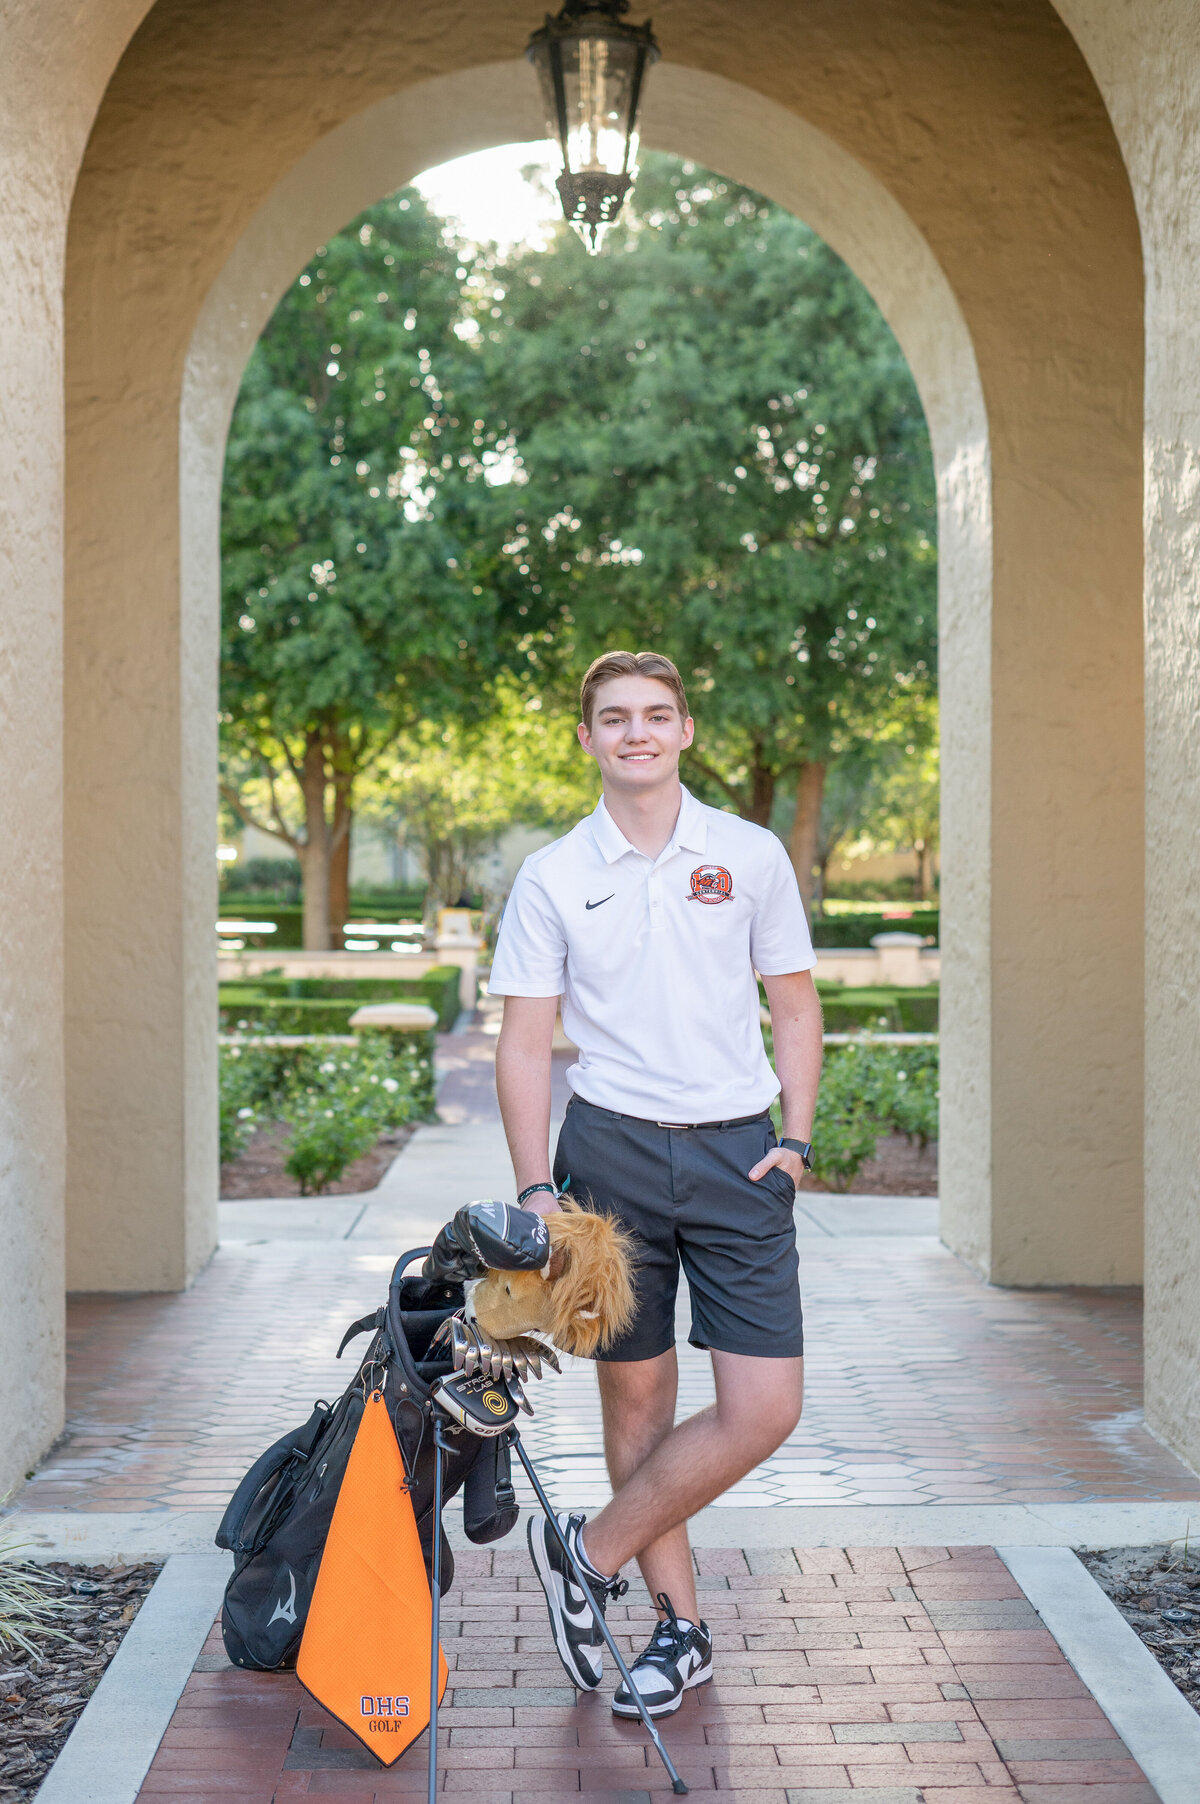 High school senior boy posing with golf clubs in archway.